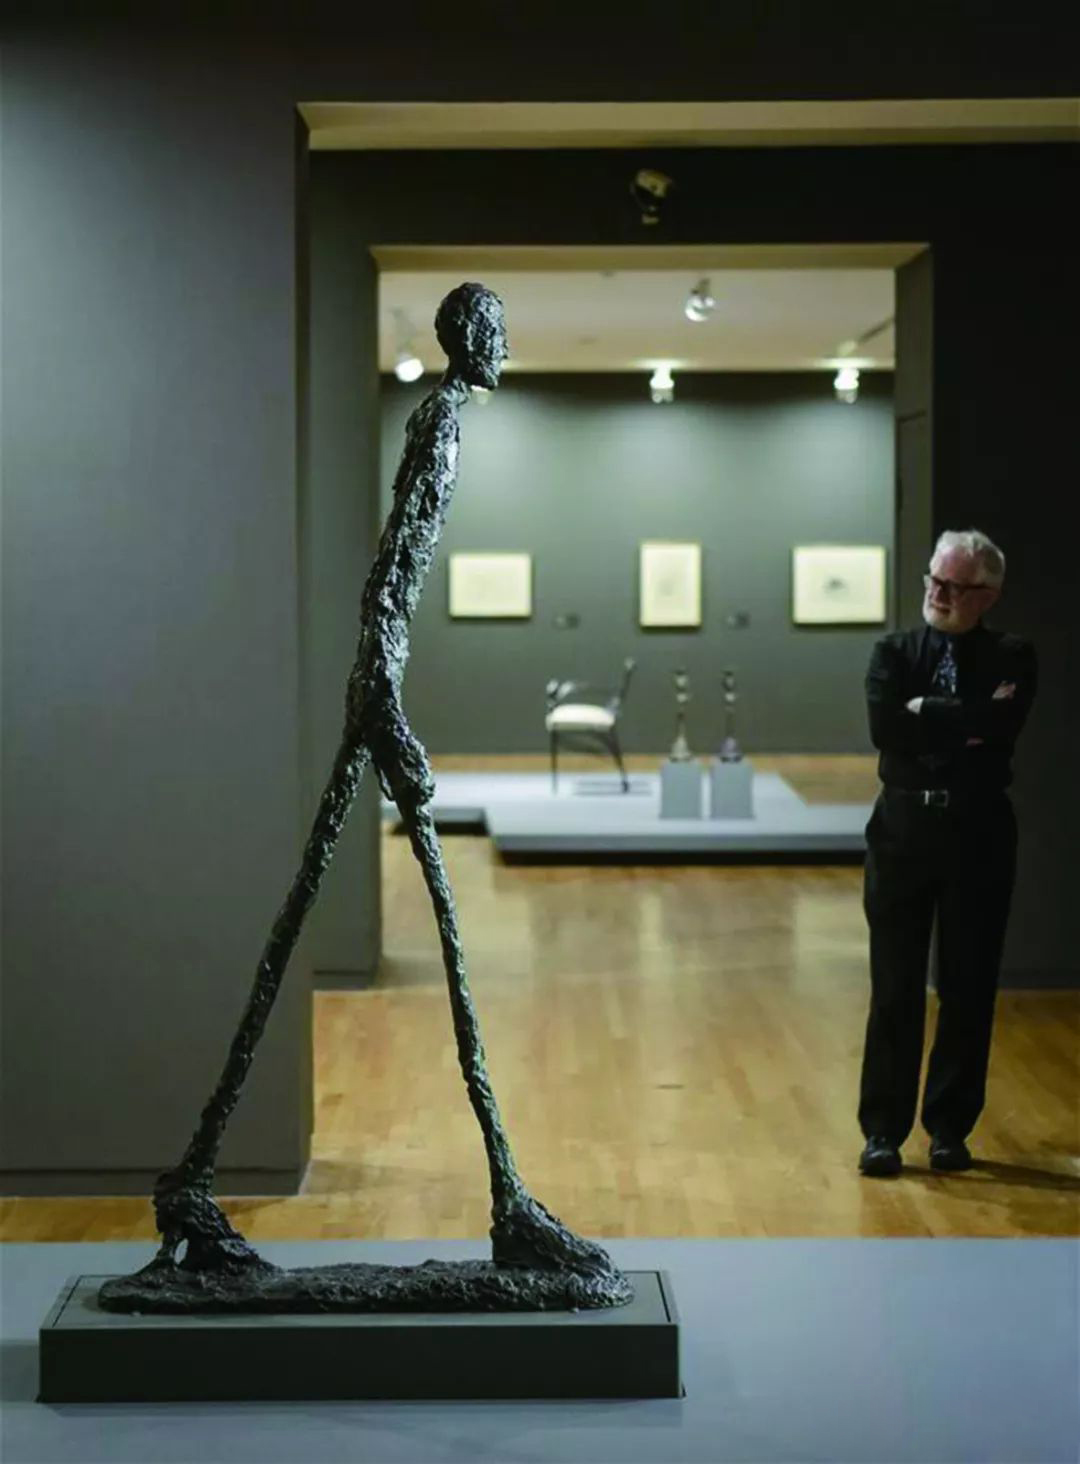 贾科梅蒂孤独的行者评加拿大温哥华美术馆展览阿尔伯特贾科梅蒂穿越